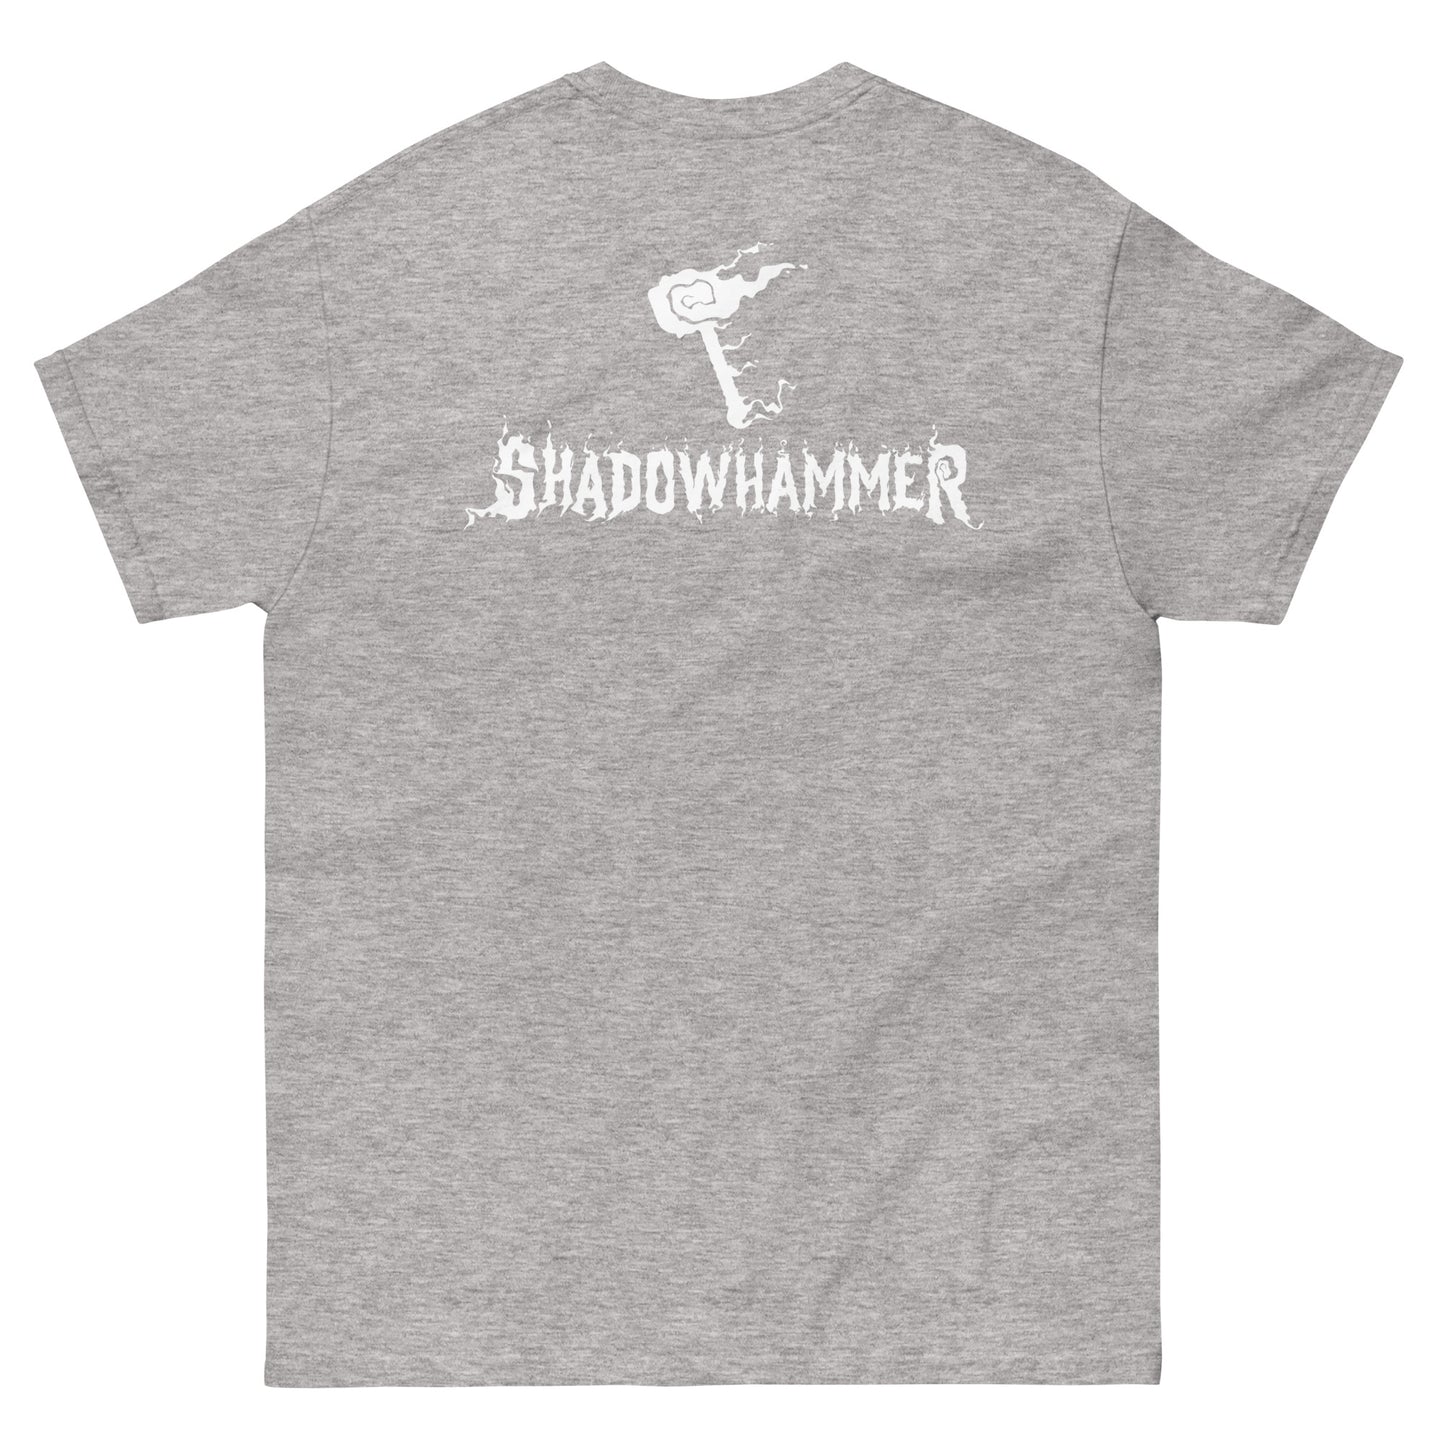 Shadowhammer Hammer Tee